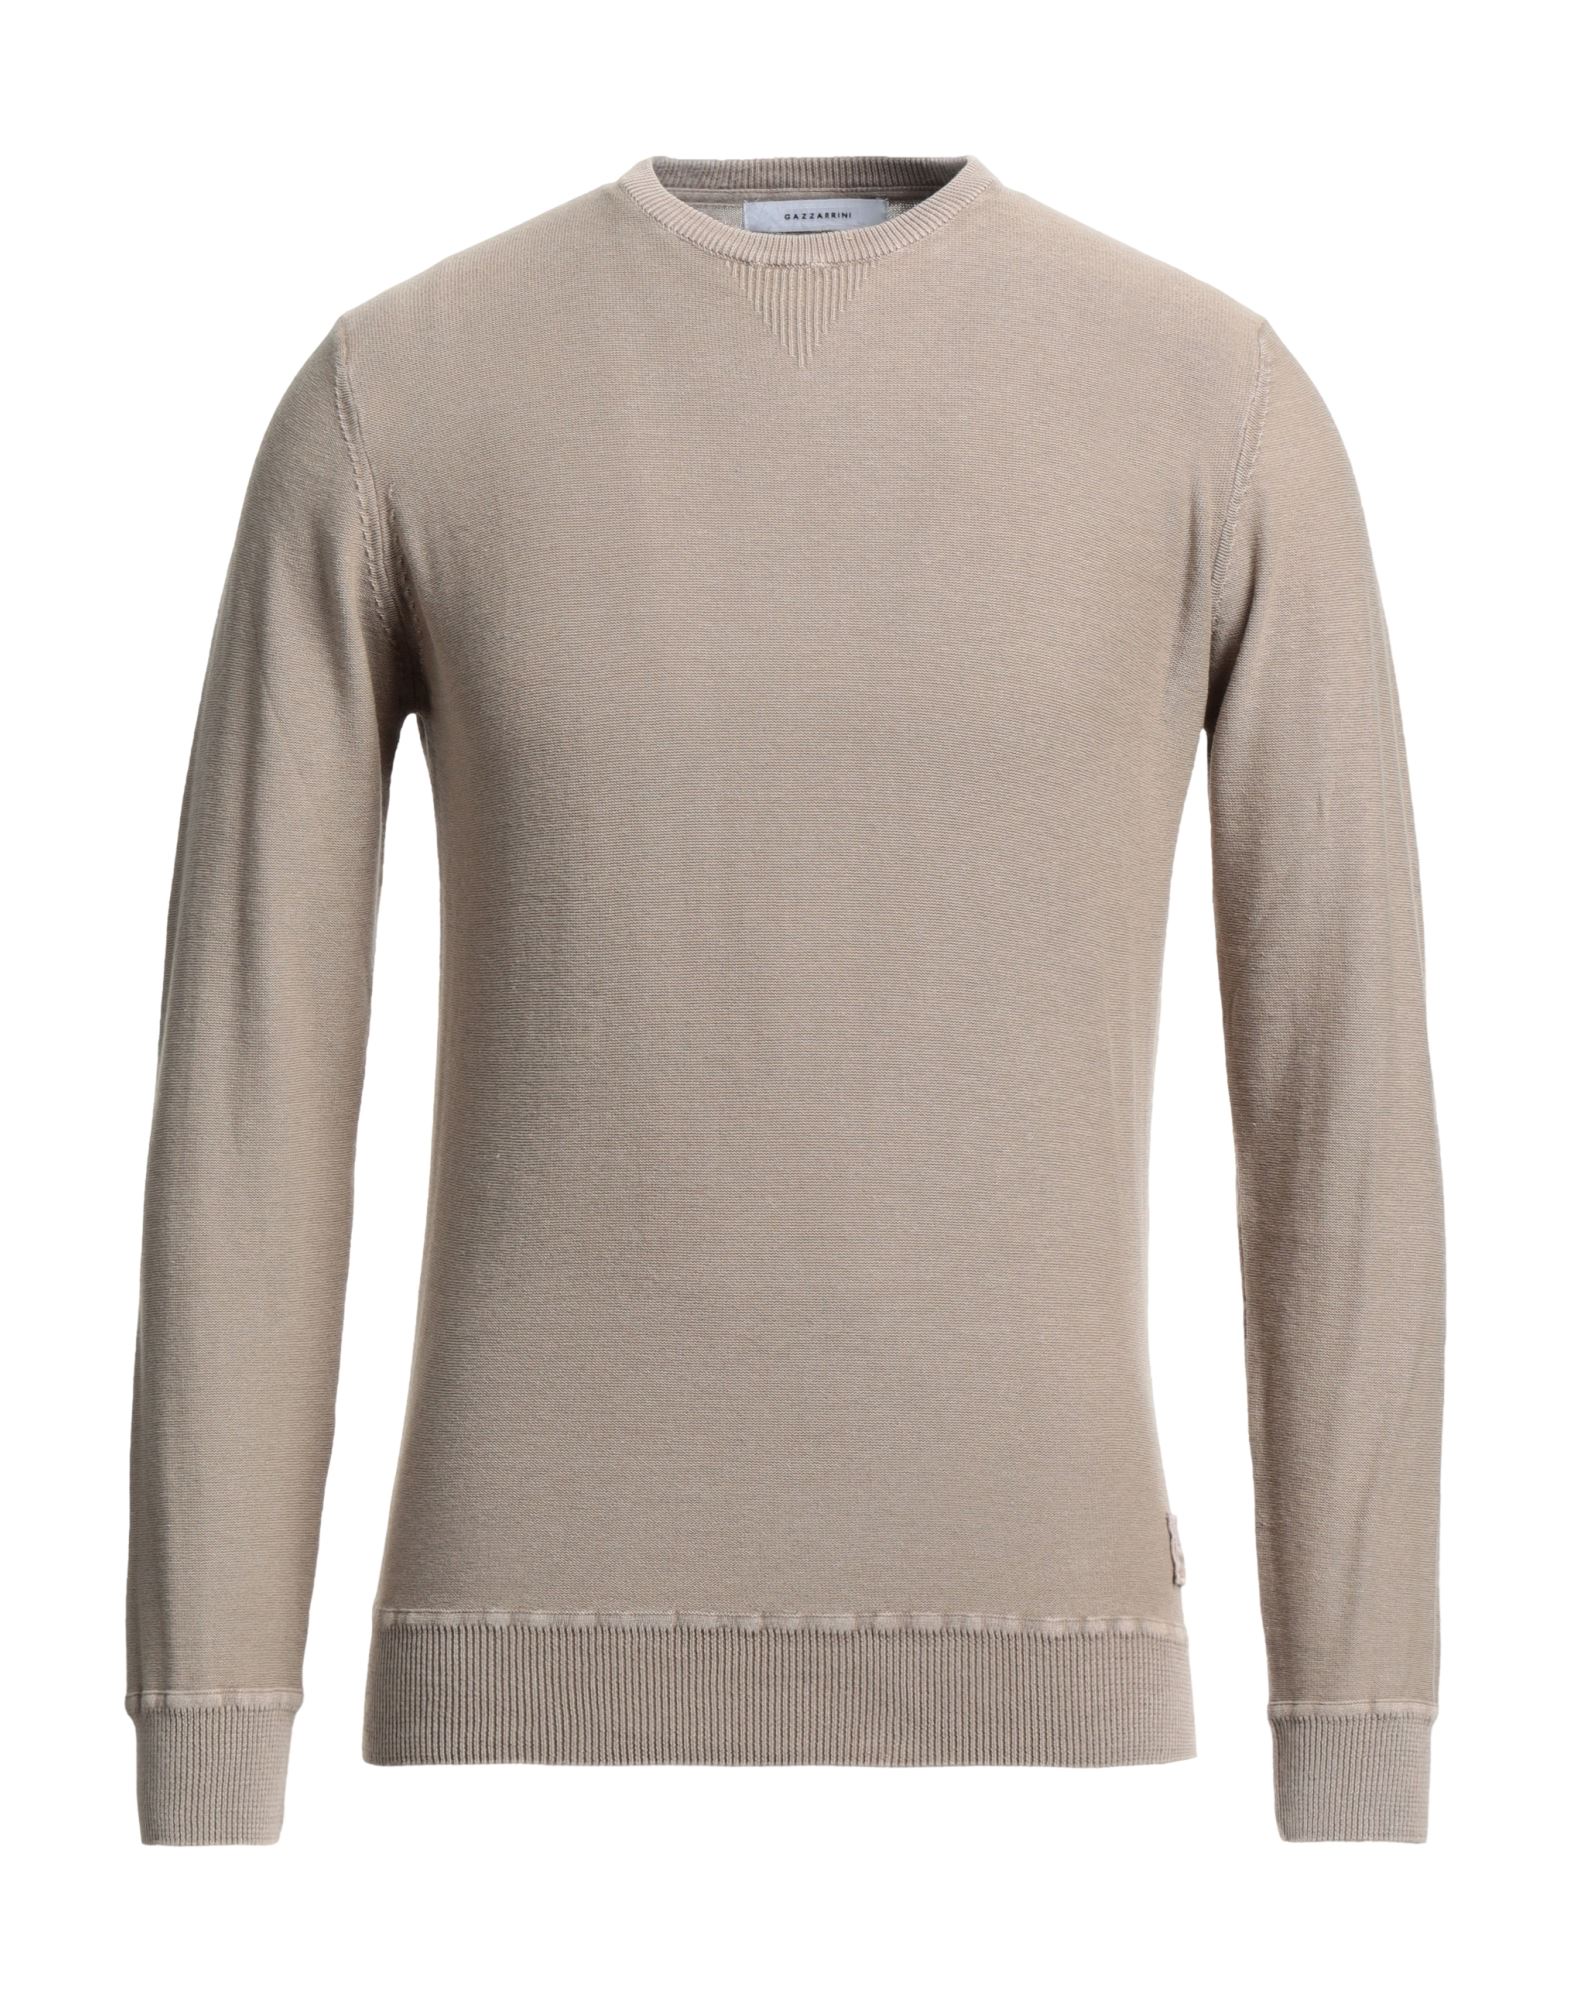 Gazzarrini Sweaters In Brown